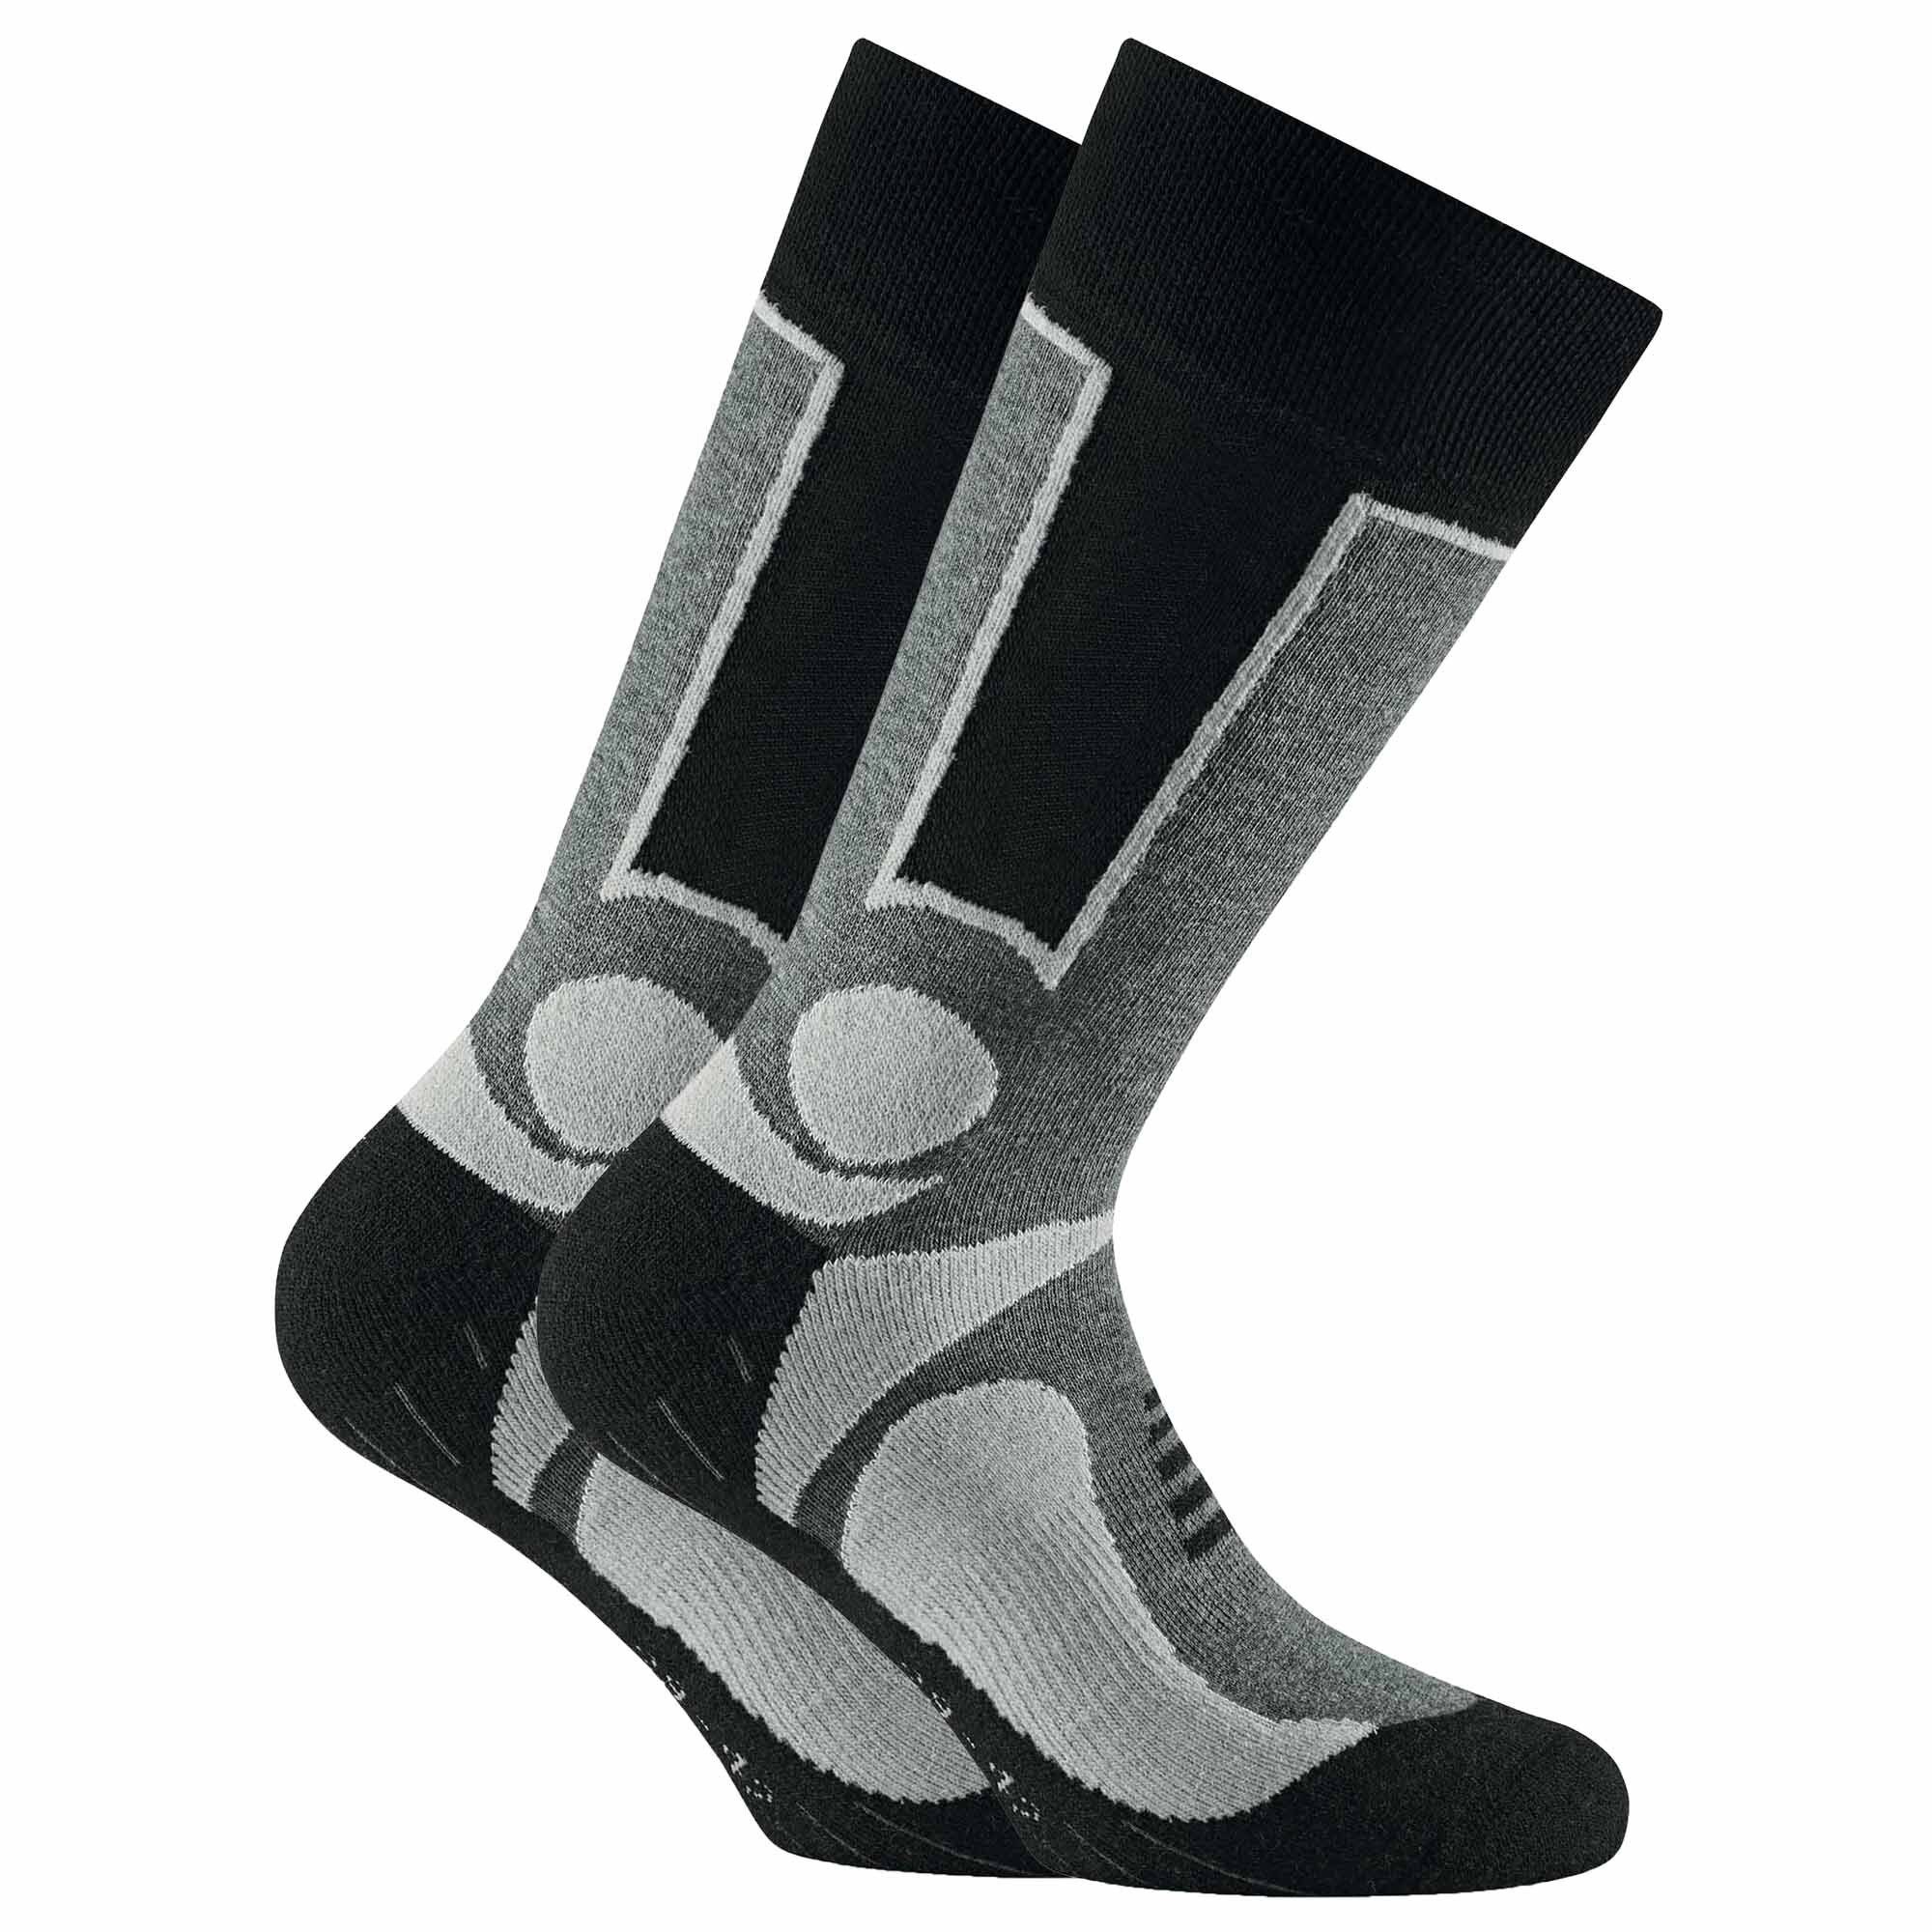 Rohner Socks Sportsocken Unisex Trekking Socken, 2er Pack - Basic Outdoor Grau